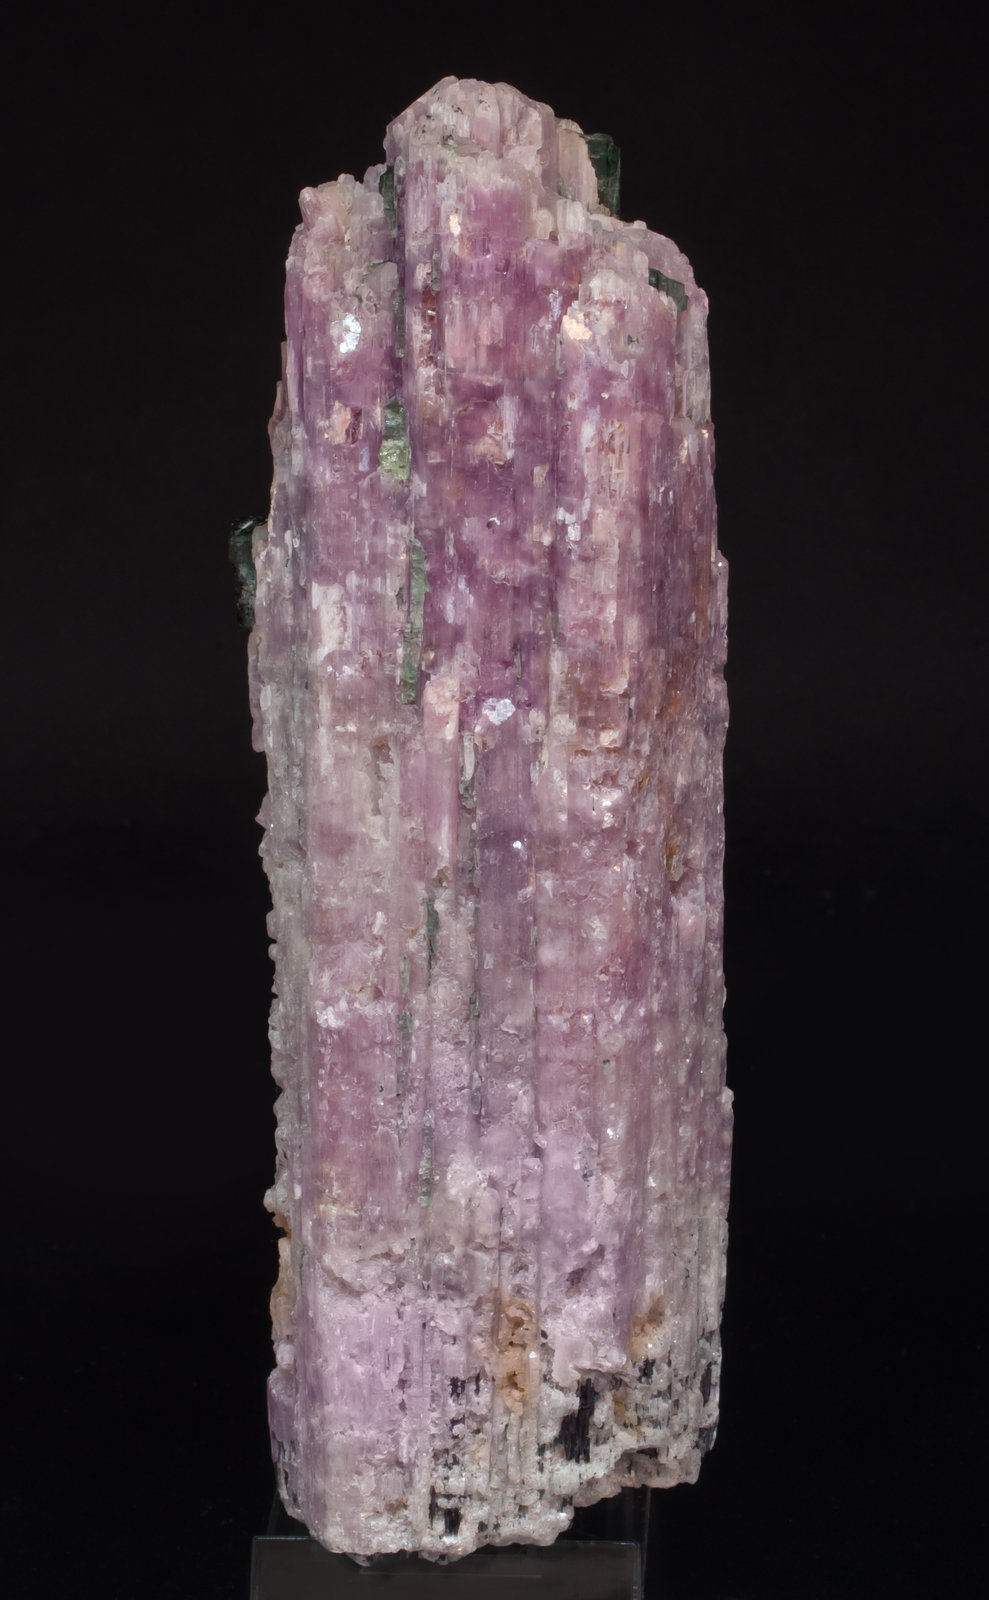 specimens/s_imagesAG3/Lepidolite-MT16AG3s.jpg